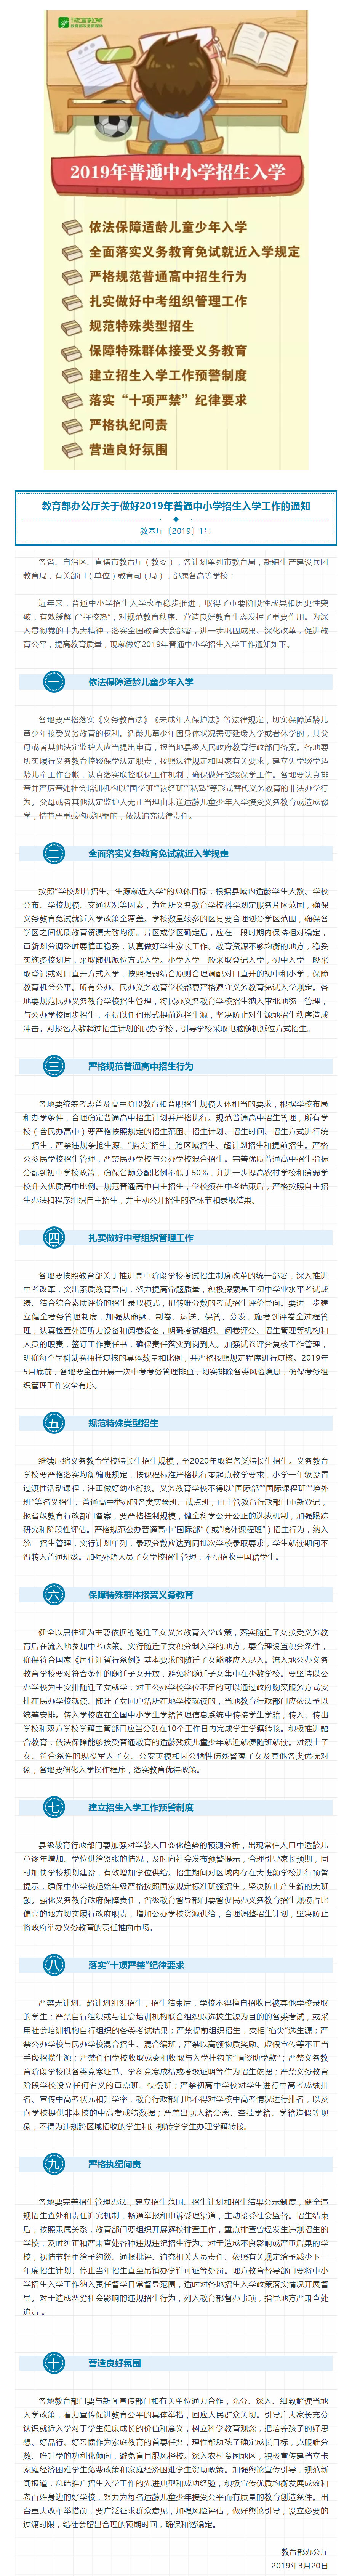 19年普通中小学招生入学通知来了 服务信息 中国政府网